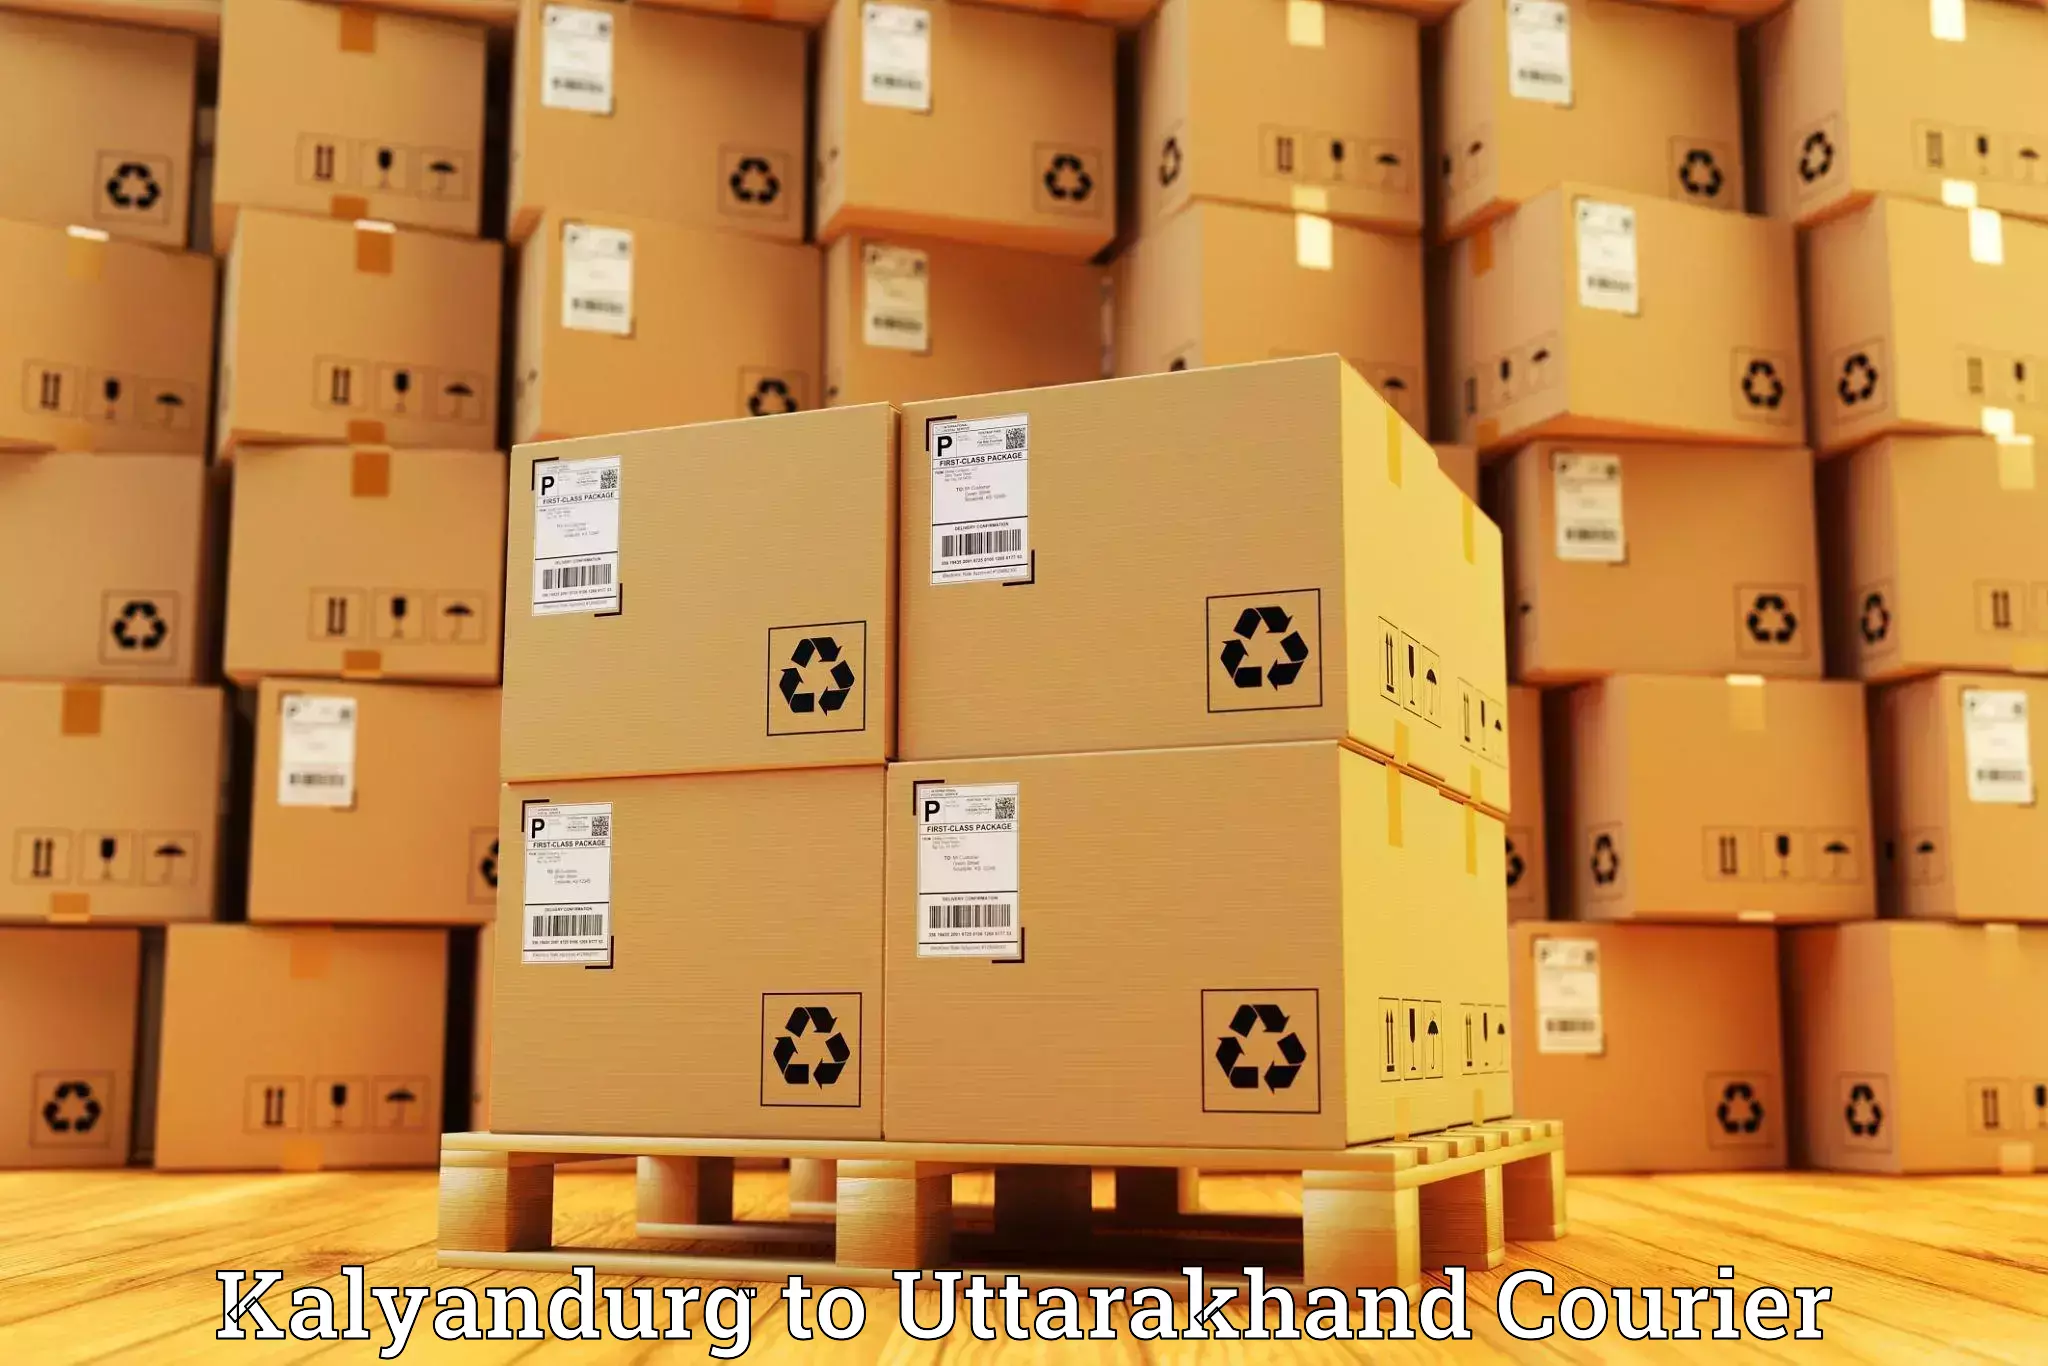 Efficient cargo handling in Kalyandurg to Uttarakhand